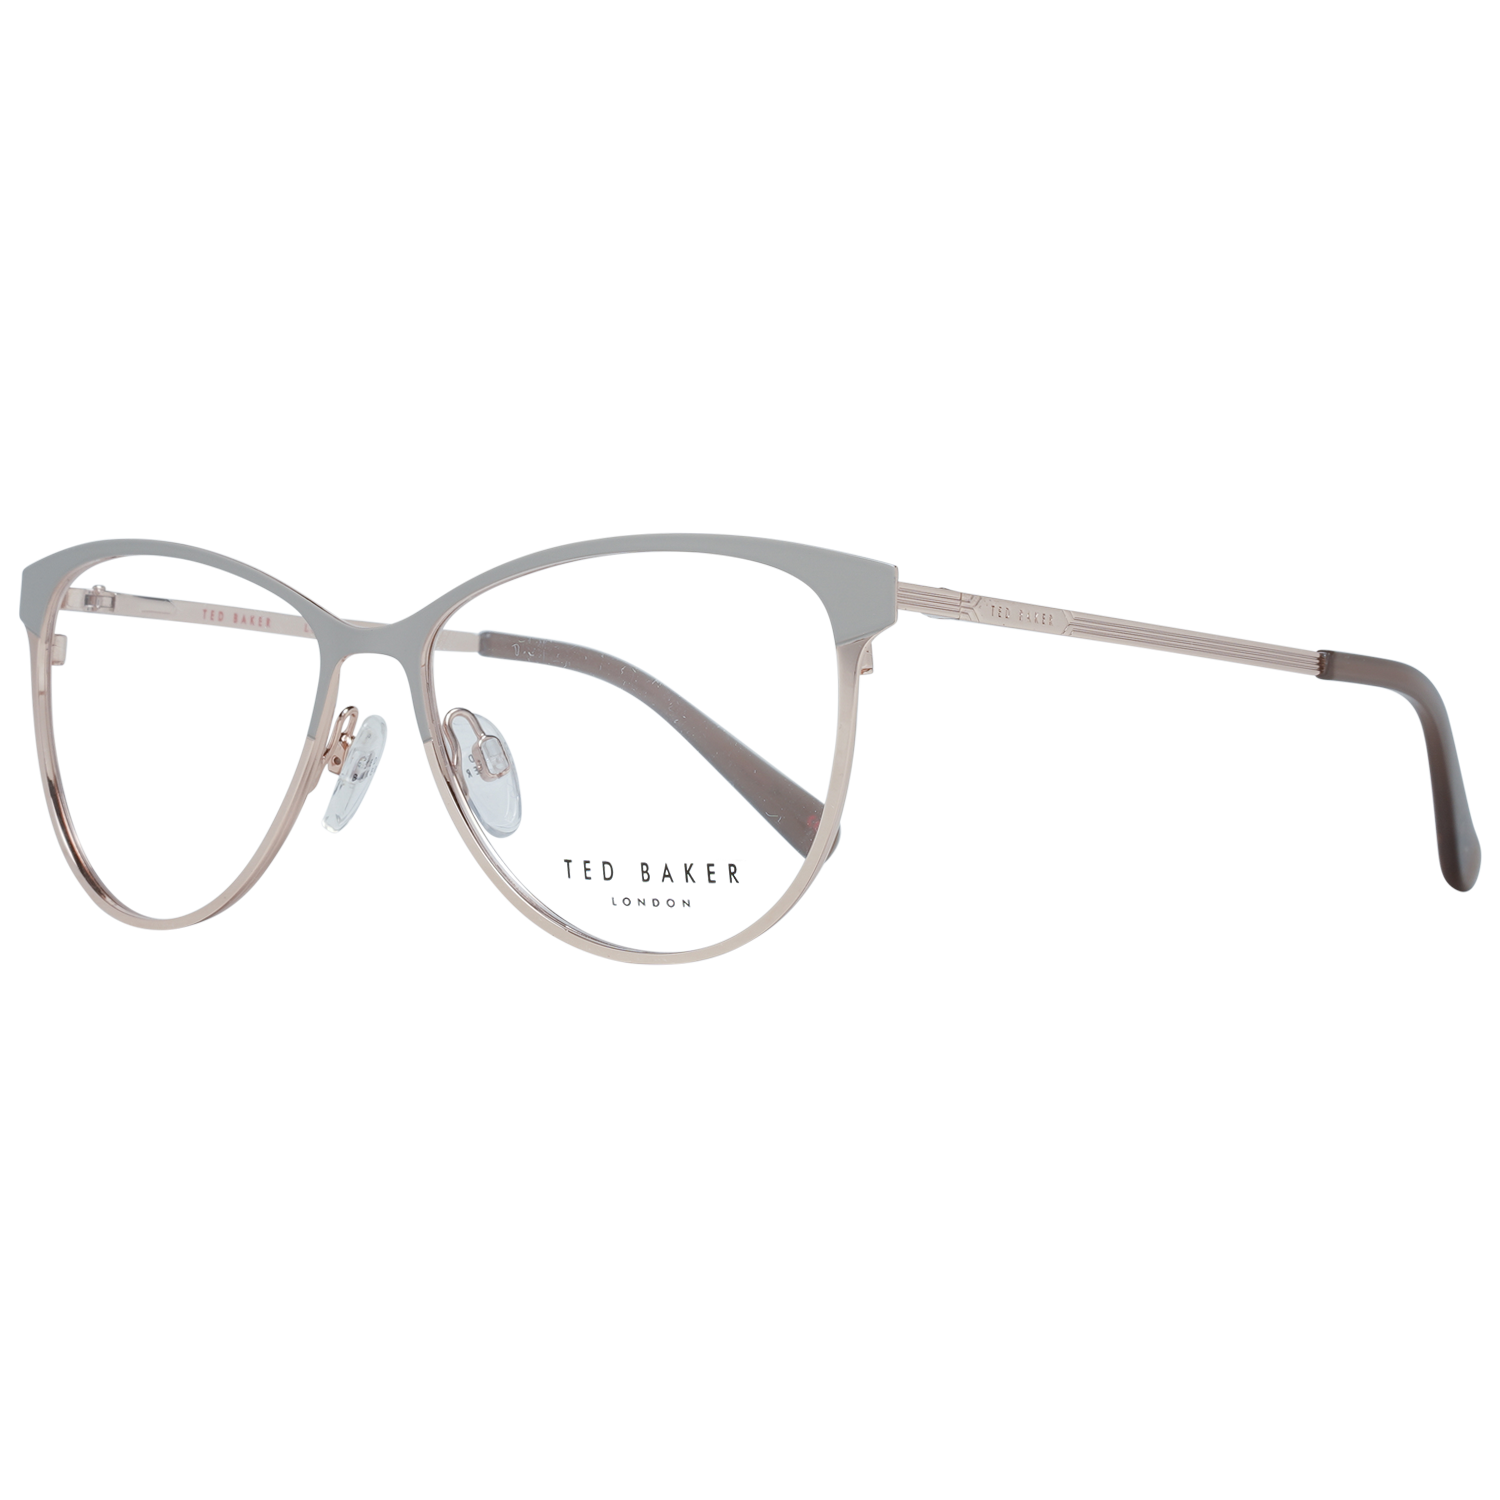 Ted Baker Frames Ted Baker Prescription Glasses Optical Frame TB2255 905 54 Aure Eyeglasses Eyewear UK USA Australia 